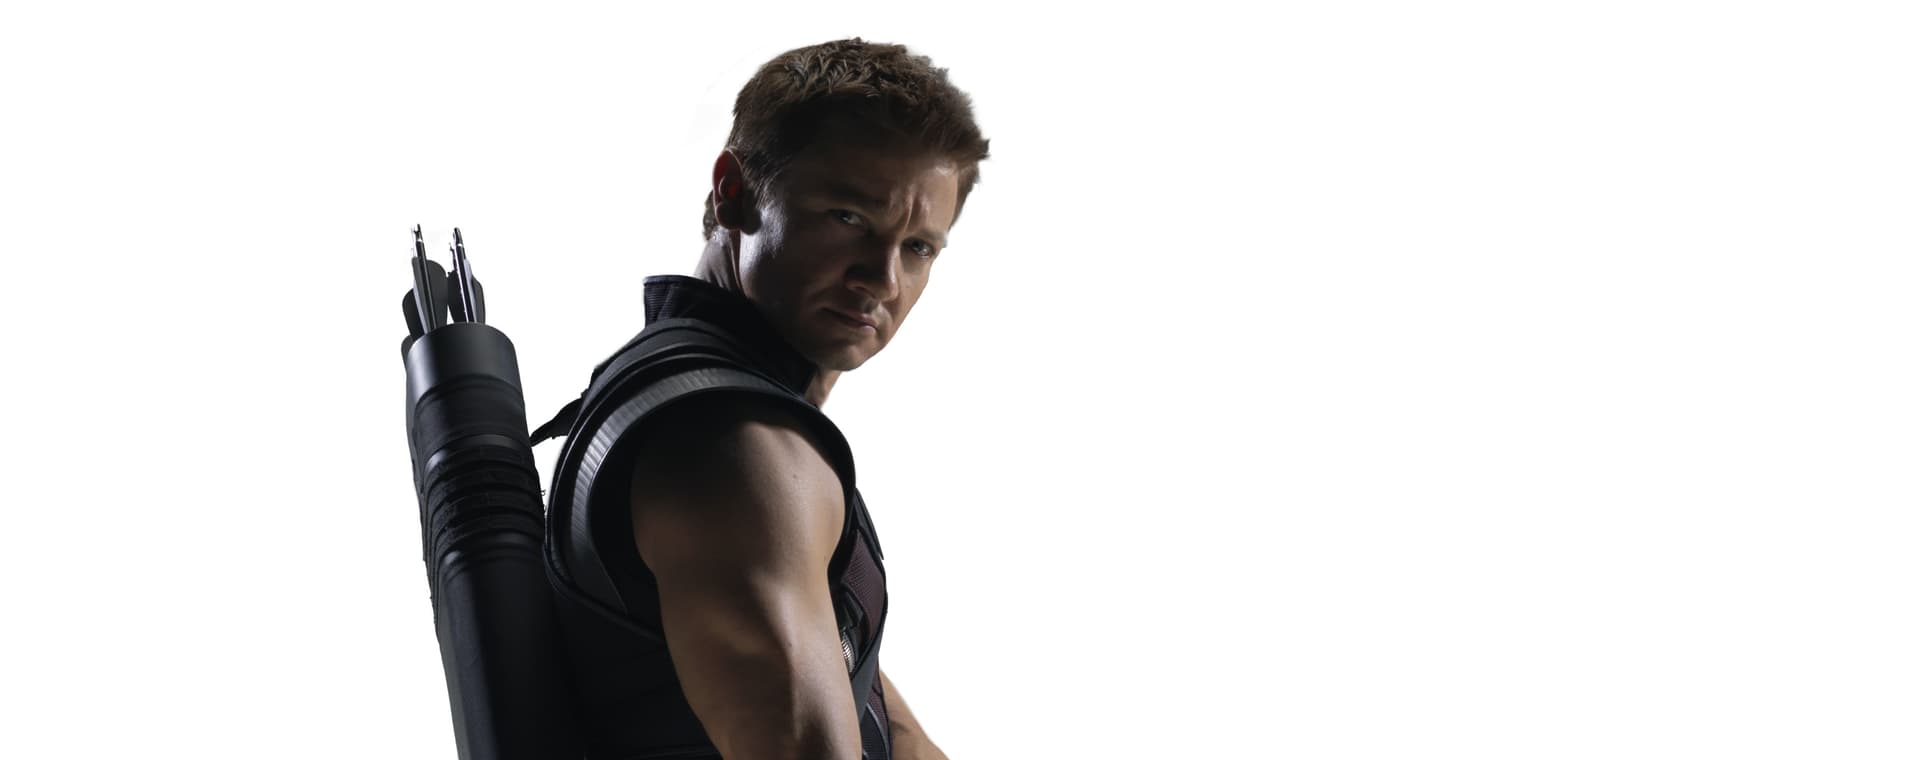 Hawkeye (Clint Barton)